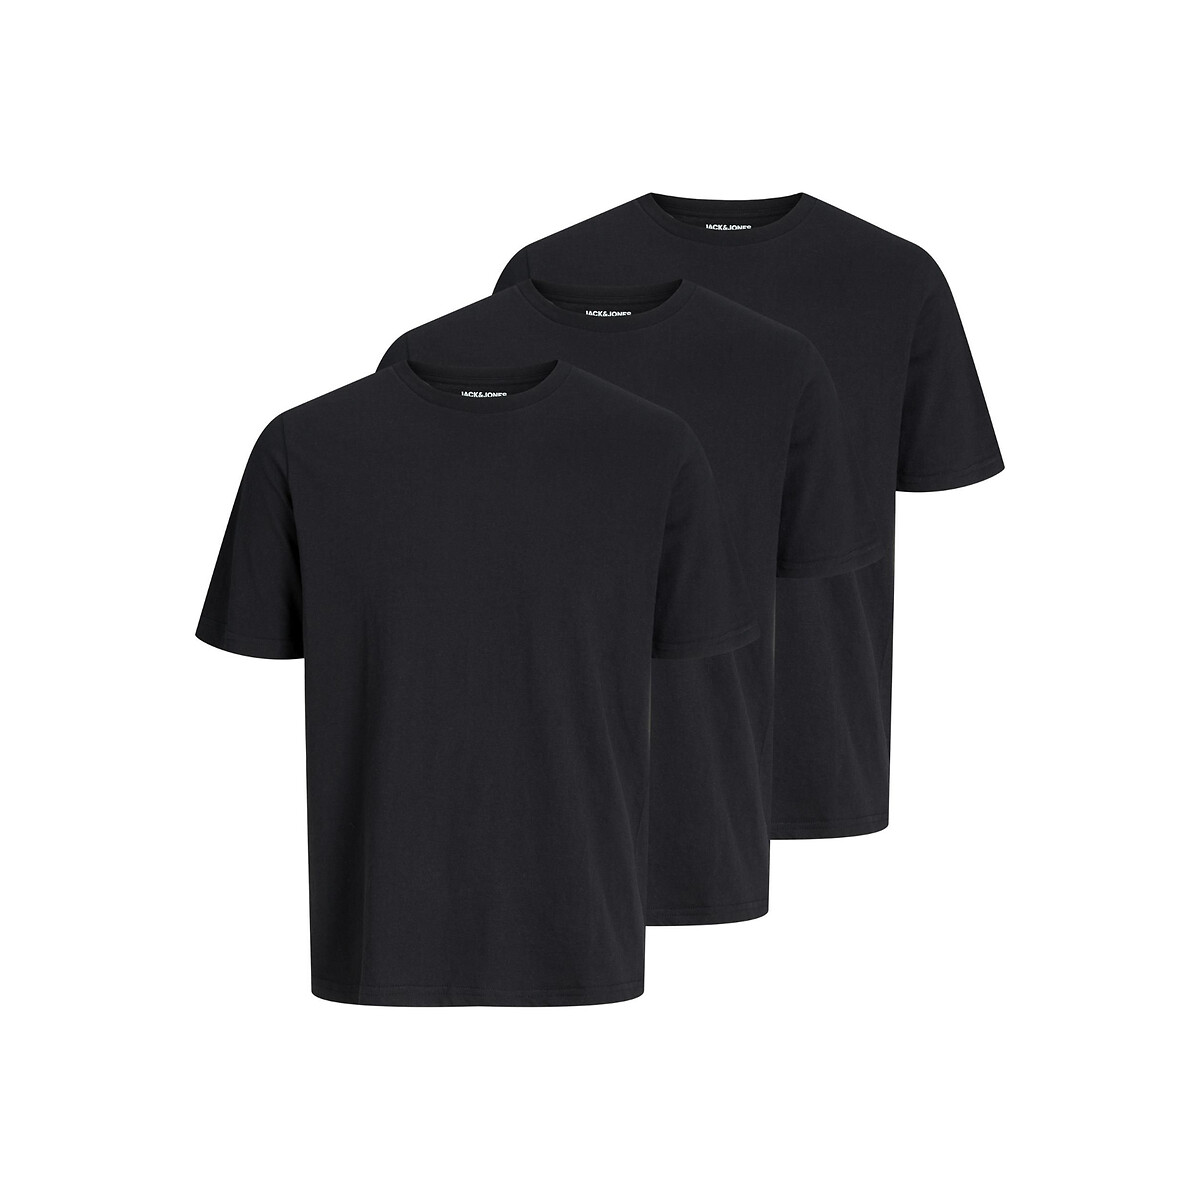 Комплект из трех футболок с круглым вырезом XL черный комплект из трех футболок с круглым вырезом 5 синий